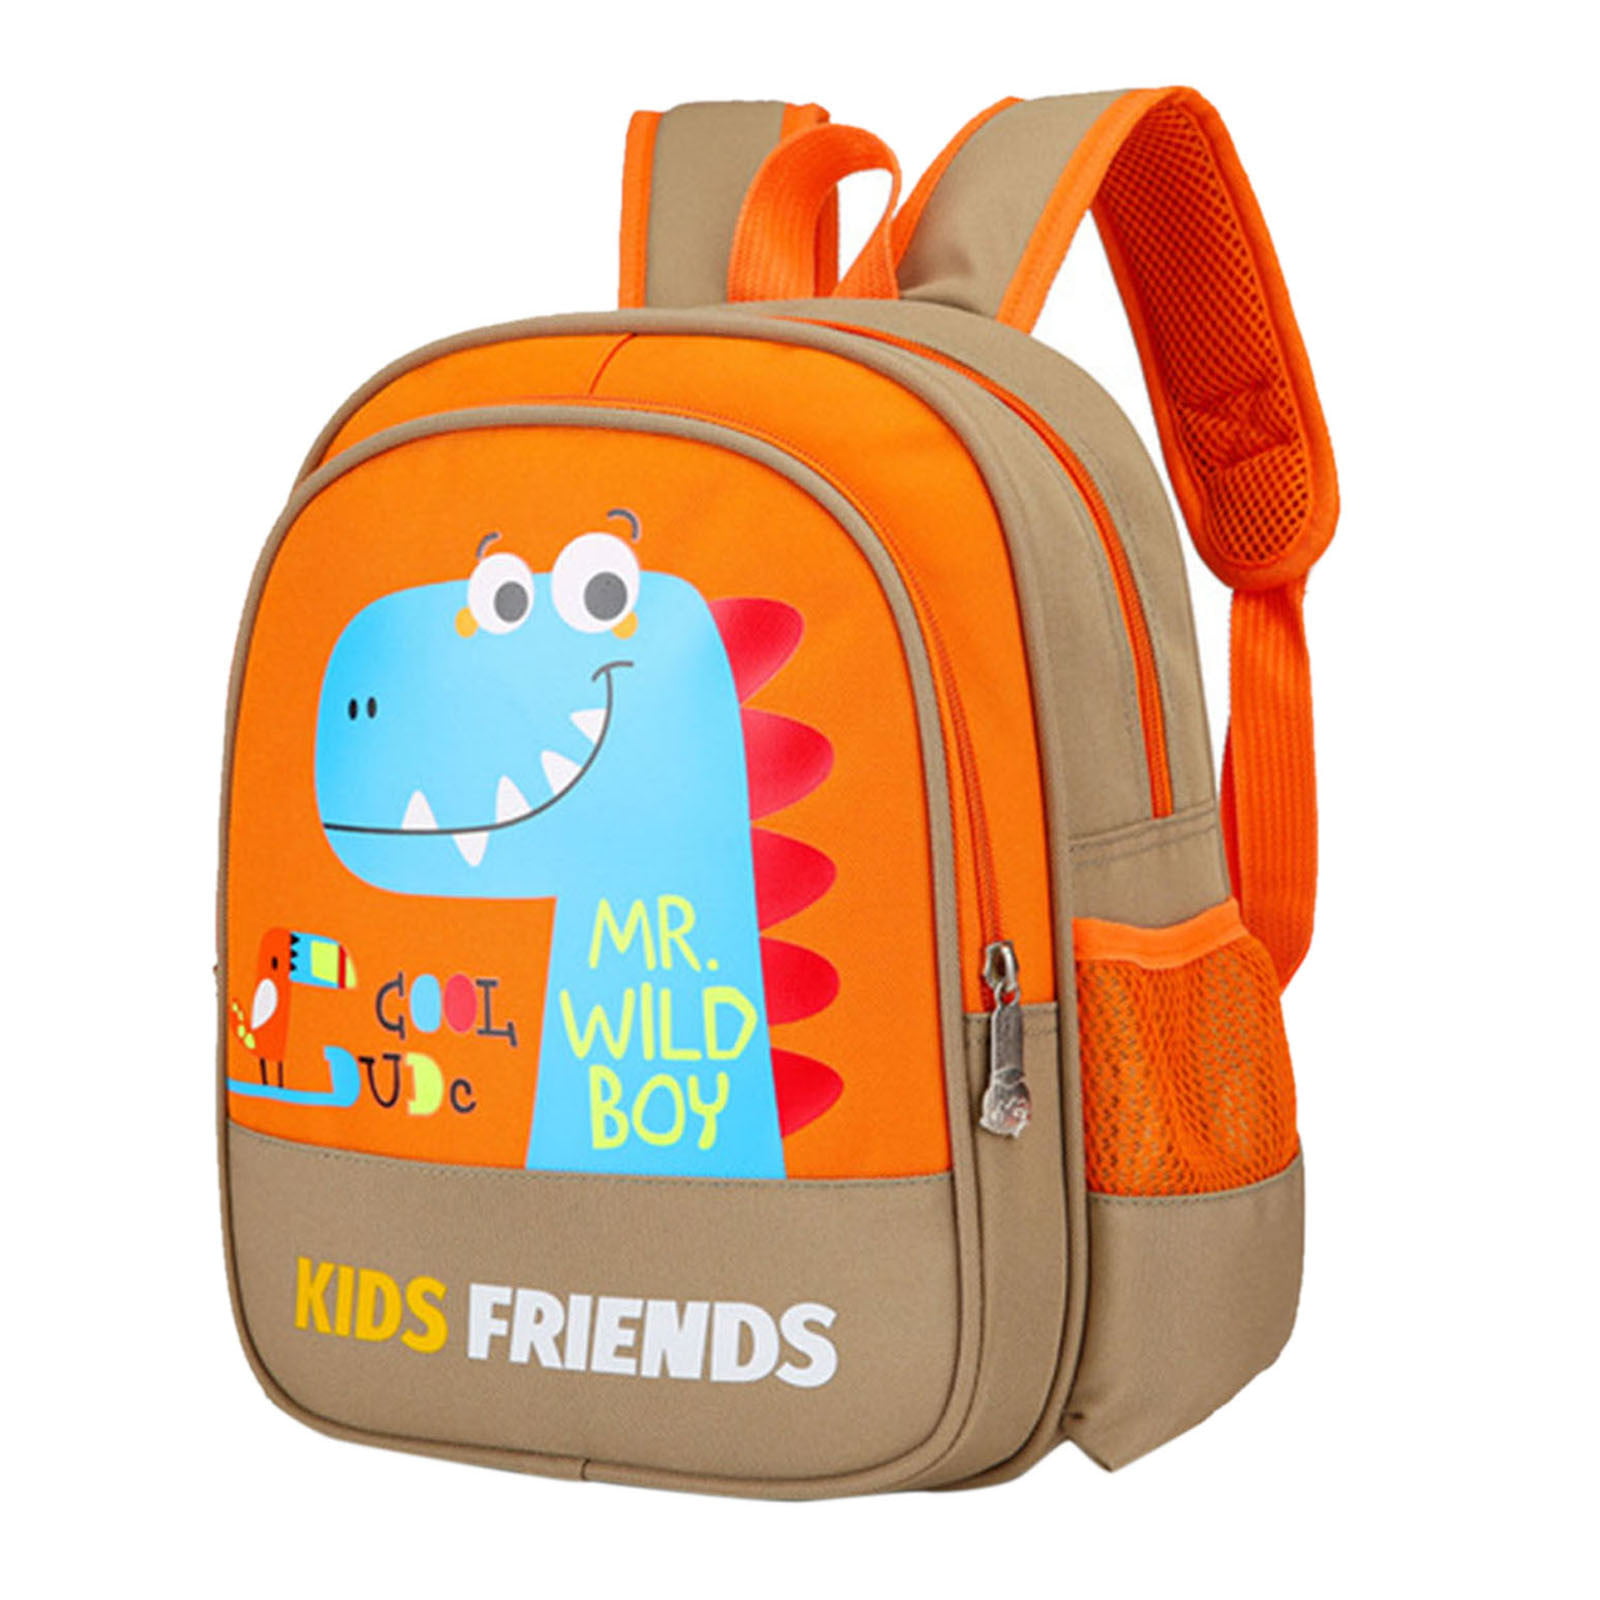 Childrens Anime Backpack/Toddler Backpack/Kindergarten Toddler Bag with Adjustable Cushion Straps Black 